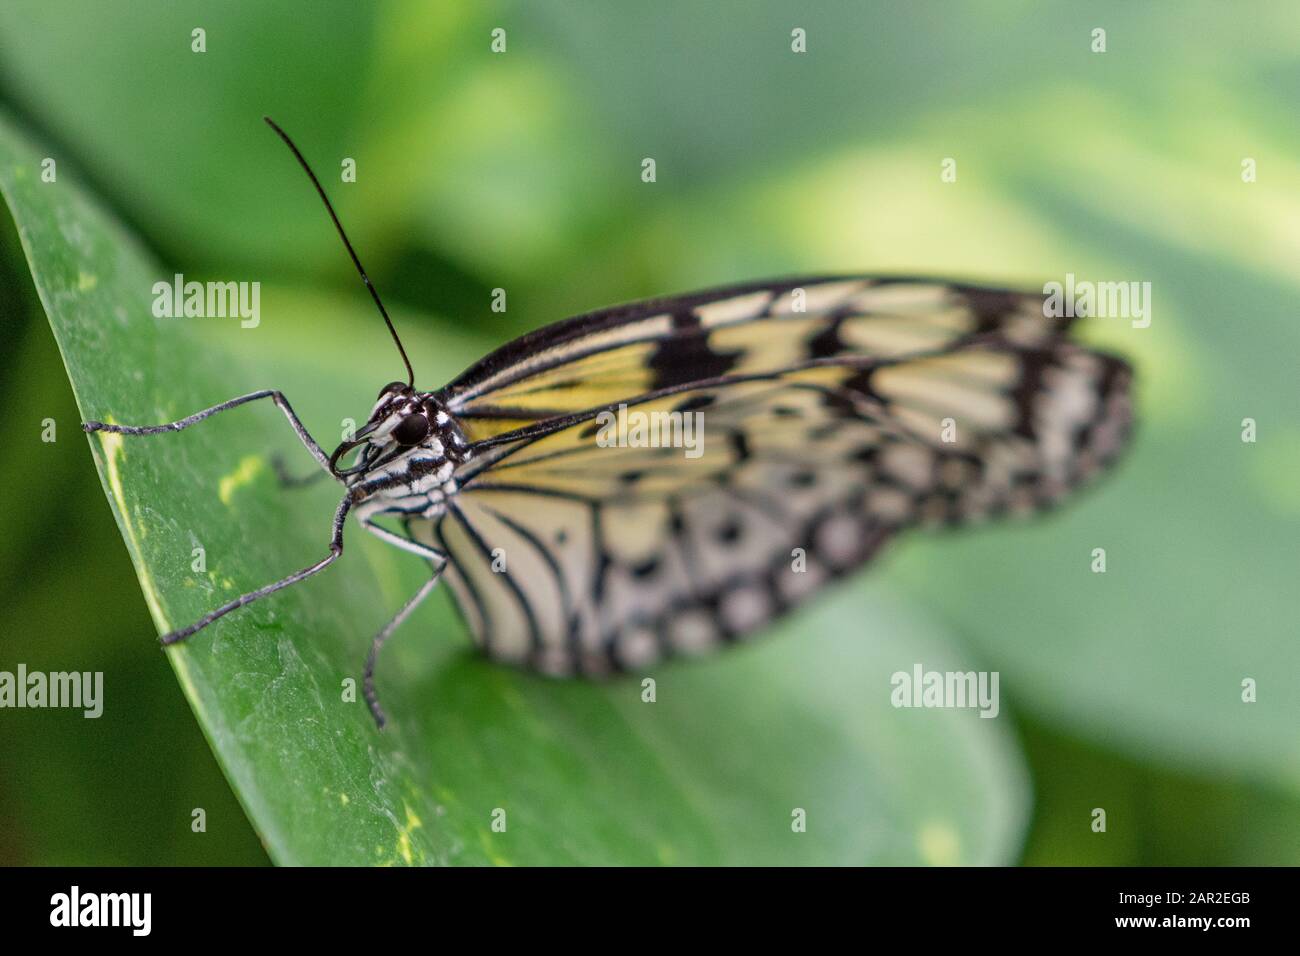 Papillon avec ailes colorées perchées sur les feuilles, macro photographie des insectes Banque D'Images